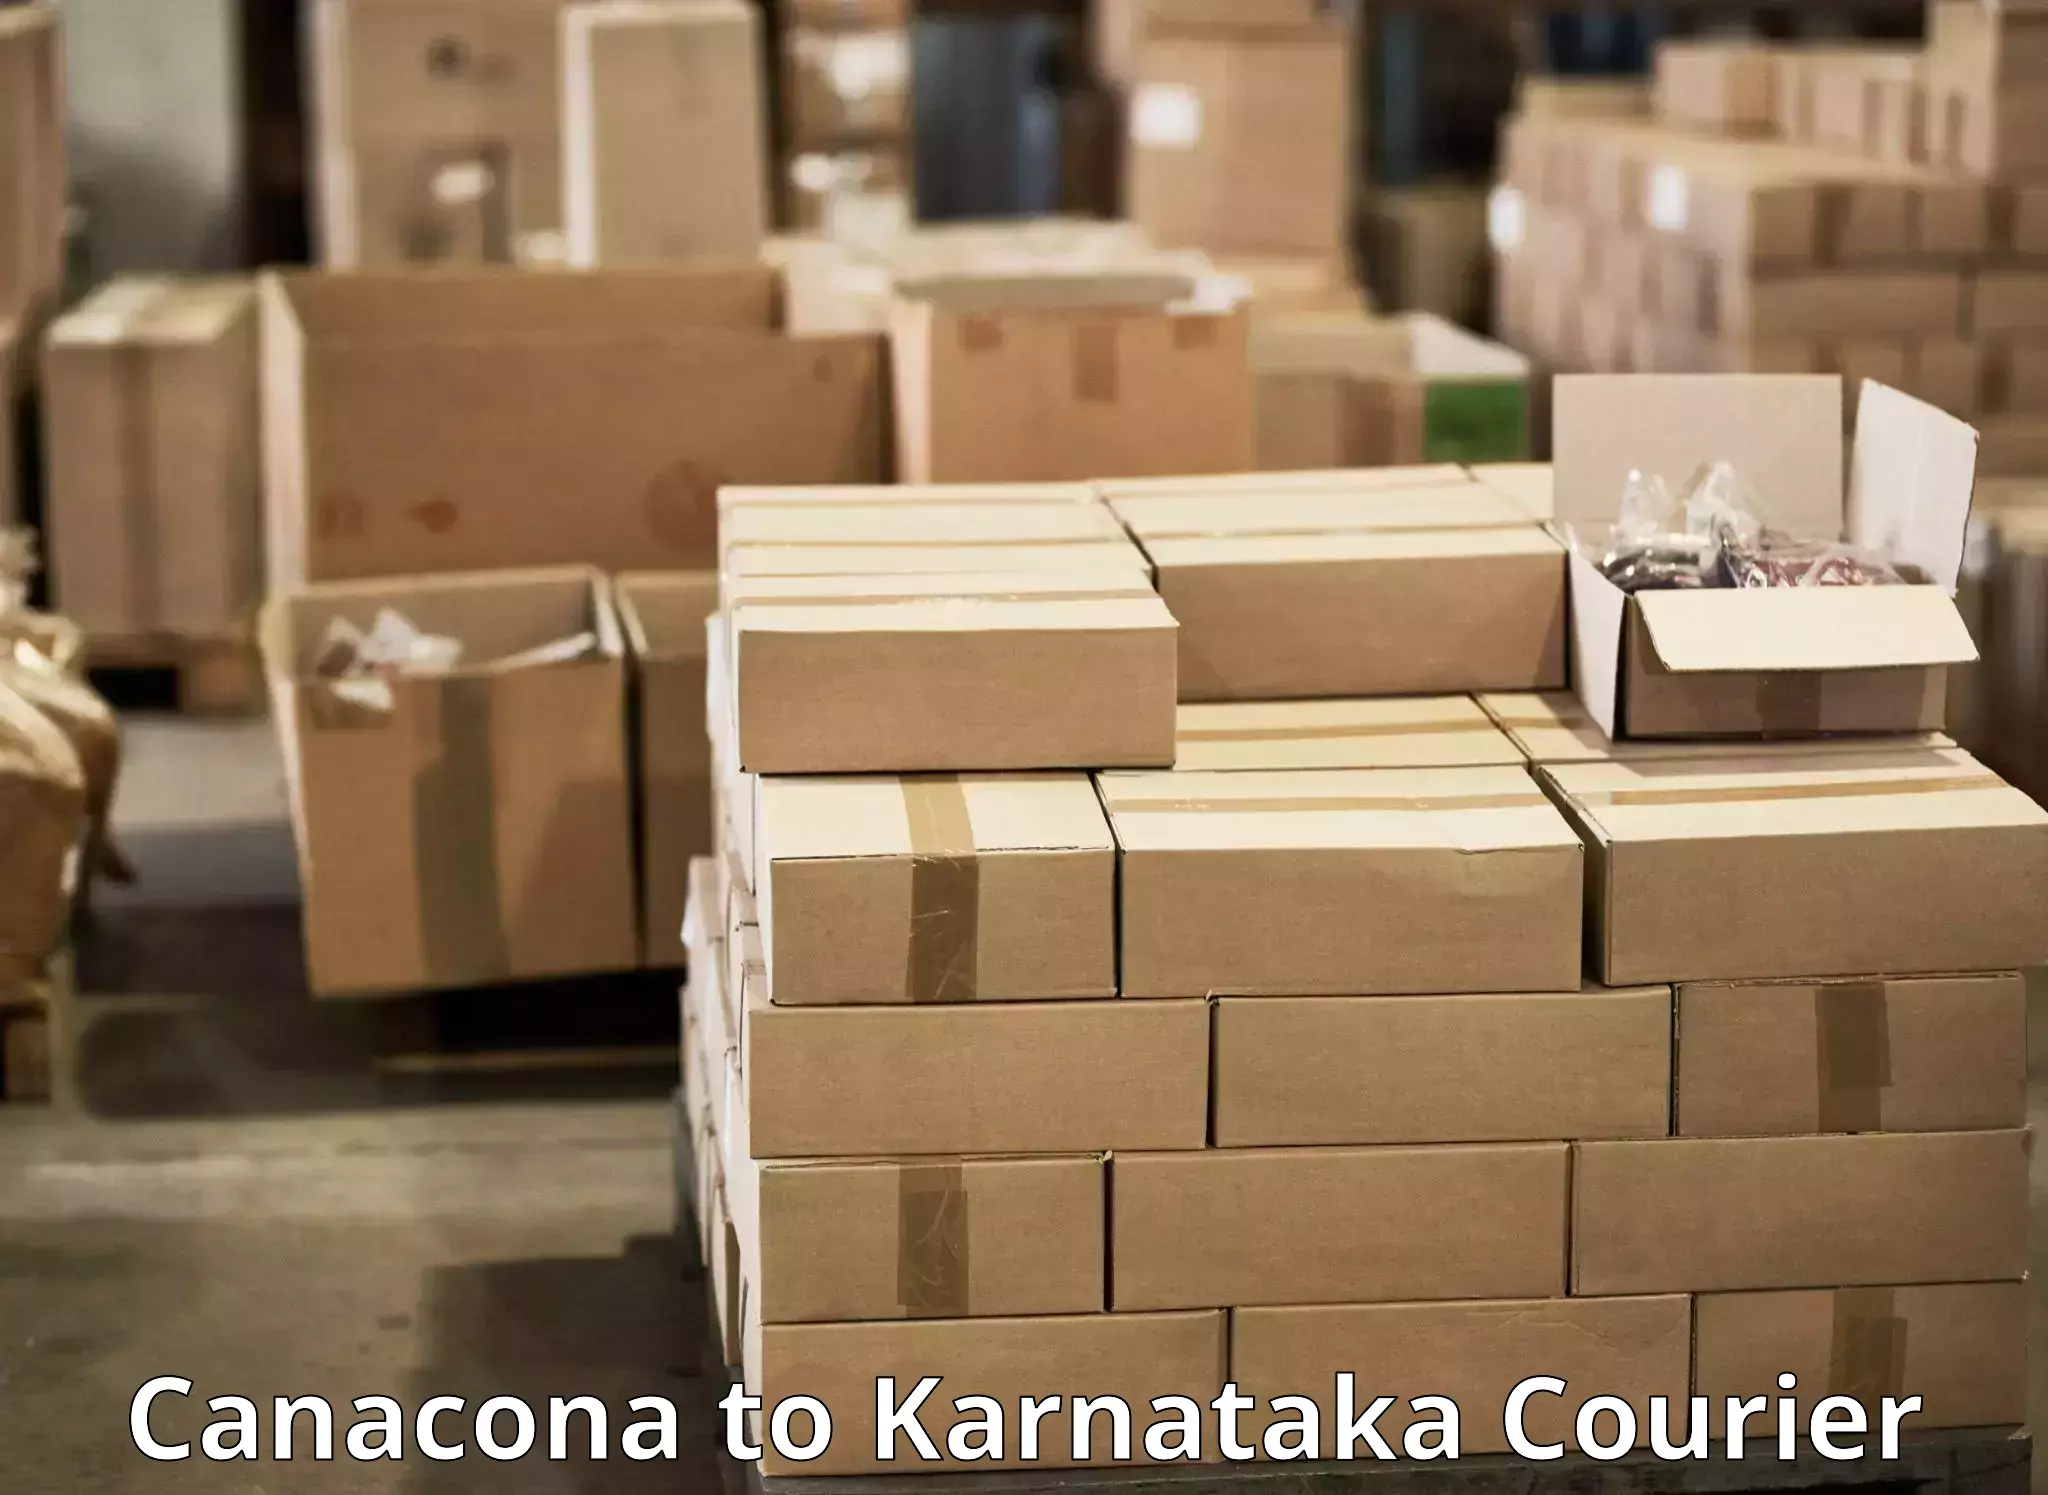 24/7 courier service Canacona to Karnataka